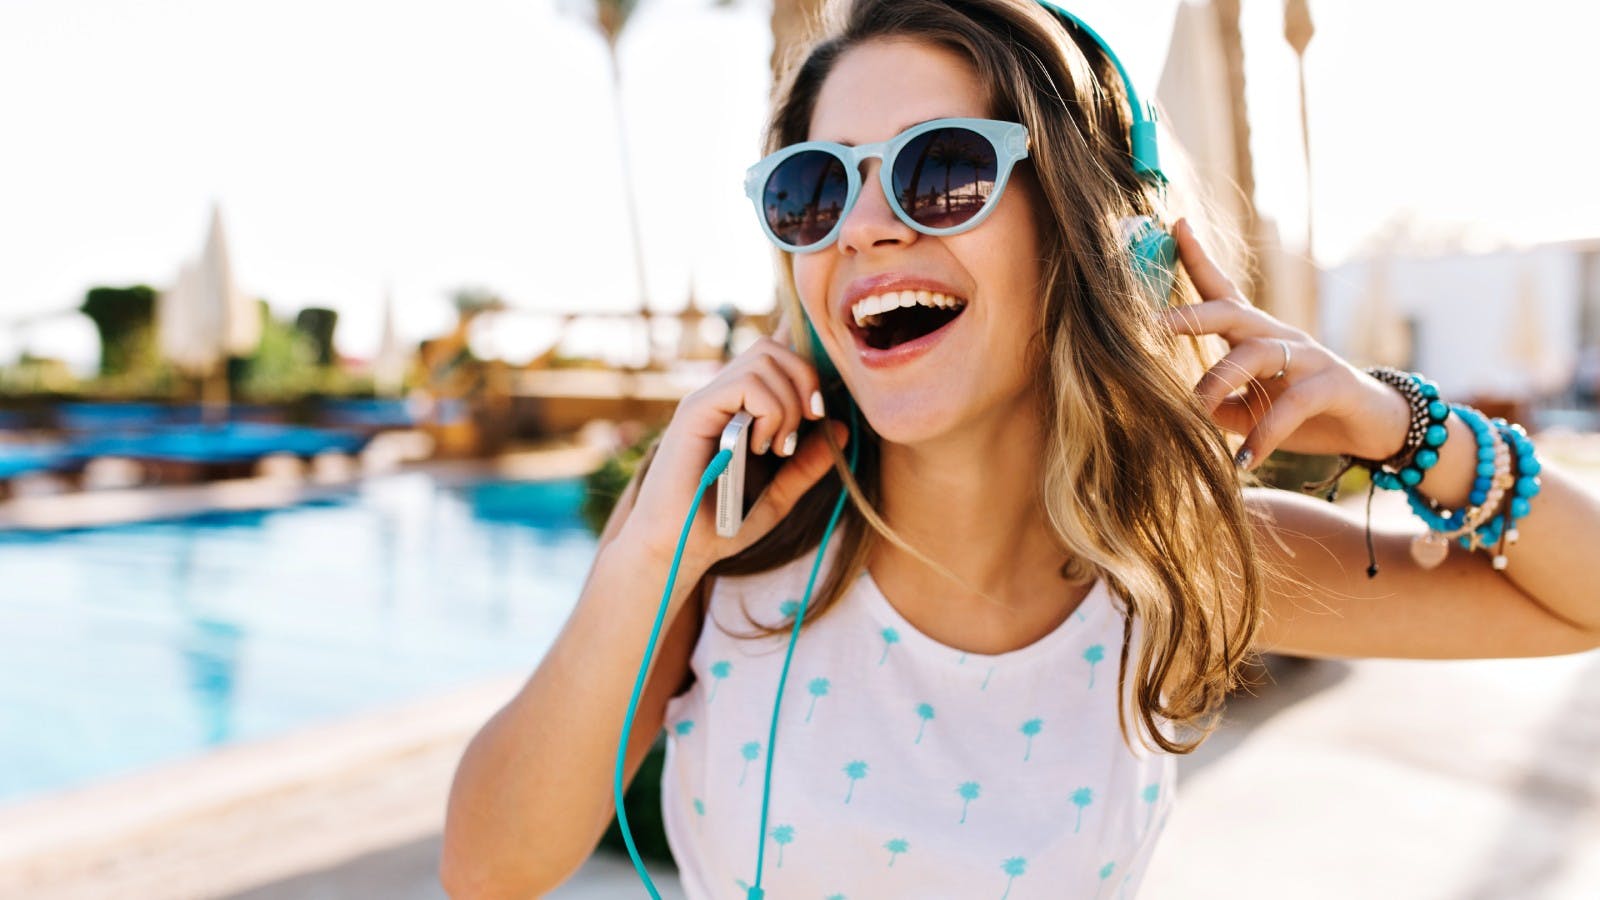 vrolijke jonge vrouw heeft een koptelefoon op en luistert naar muziek van haar telefoon